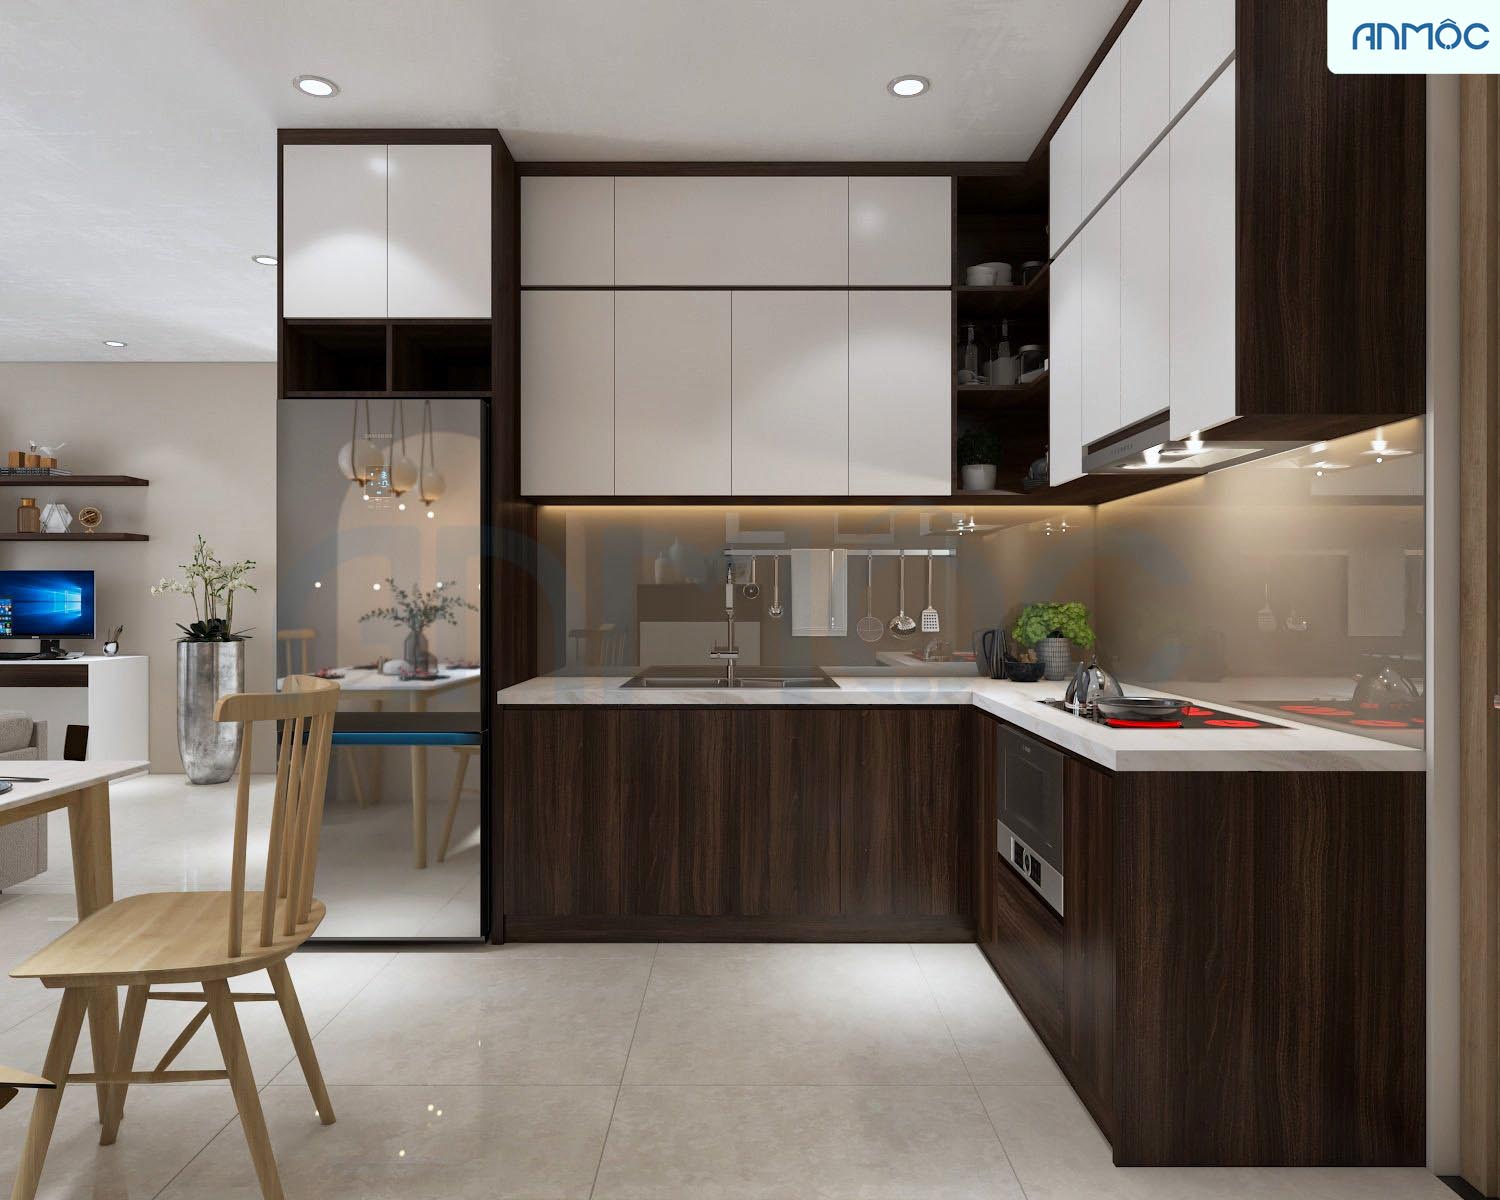 Khu vực nhà bếp
Bạn đang muốn nâng cấp nhà bếp của mình? Hãy xem qua những bức ảnh về khu vực nhà bếp để tìm kiếm những ý tưởng thiết kế hữu ích và tối ưu hóa không gian nhà bếp.